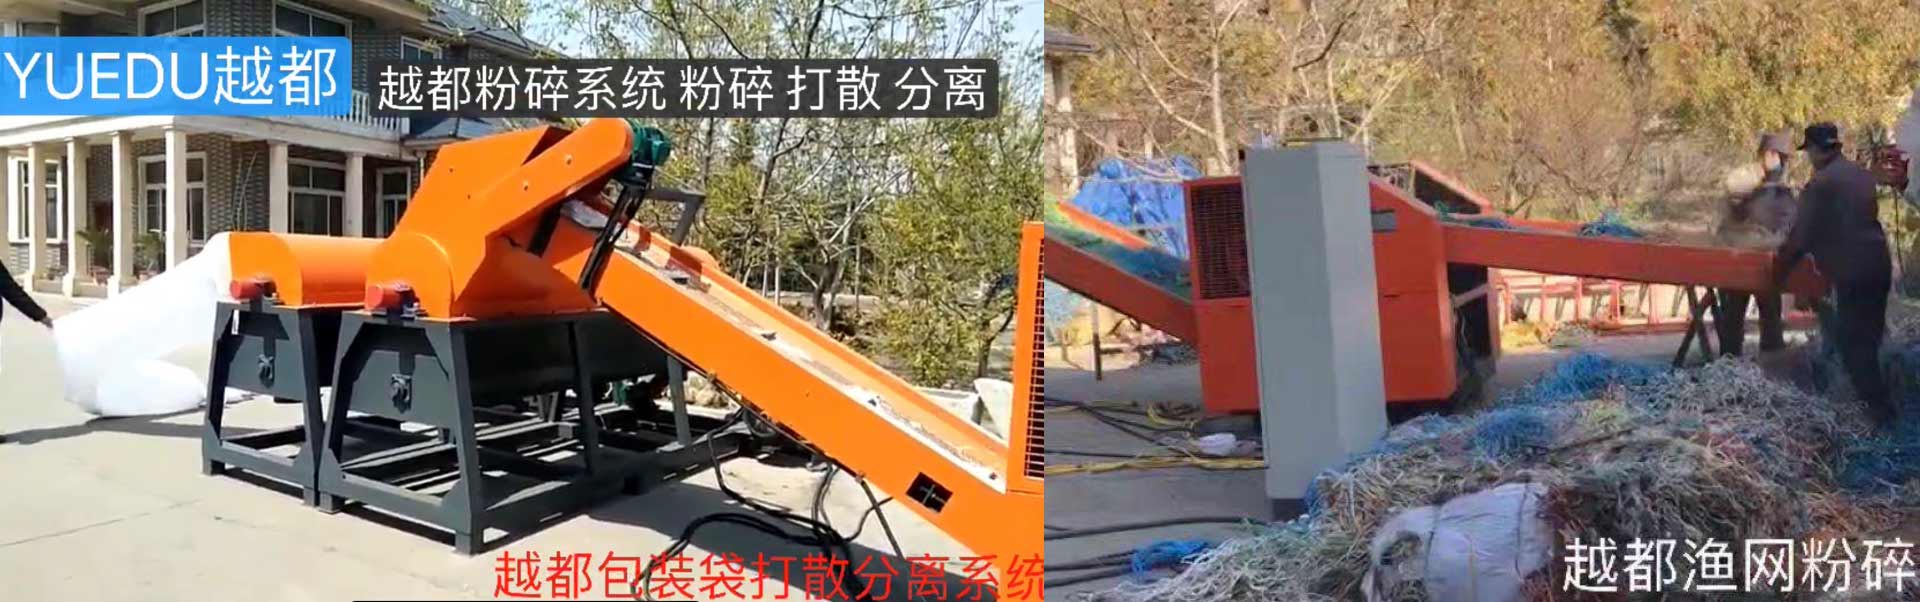 上海越都厂家生产PCB线路板粉碎机 电路板破碎机 笔记本电路板撕碎机,广泛用于电子线路板废弃物粉碎回收处理示例图18